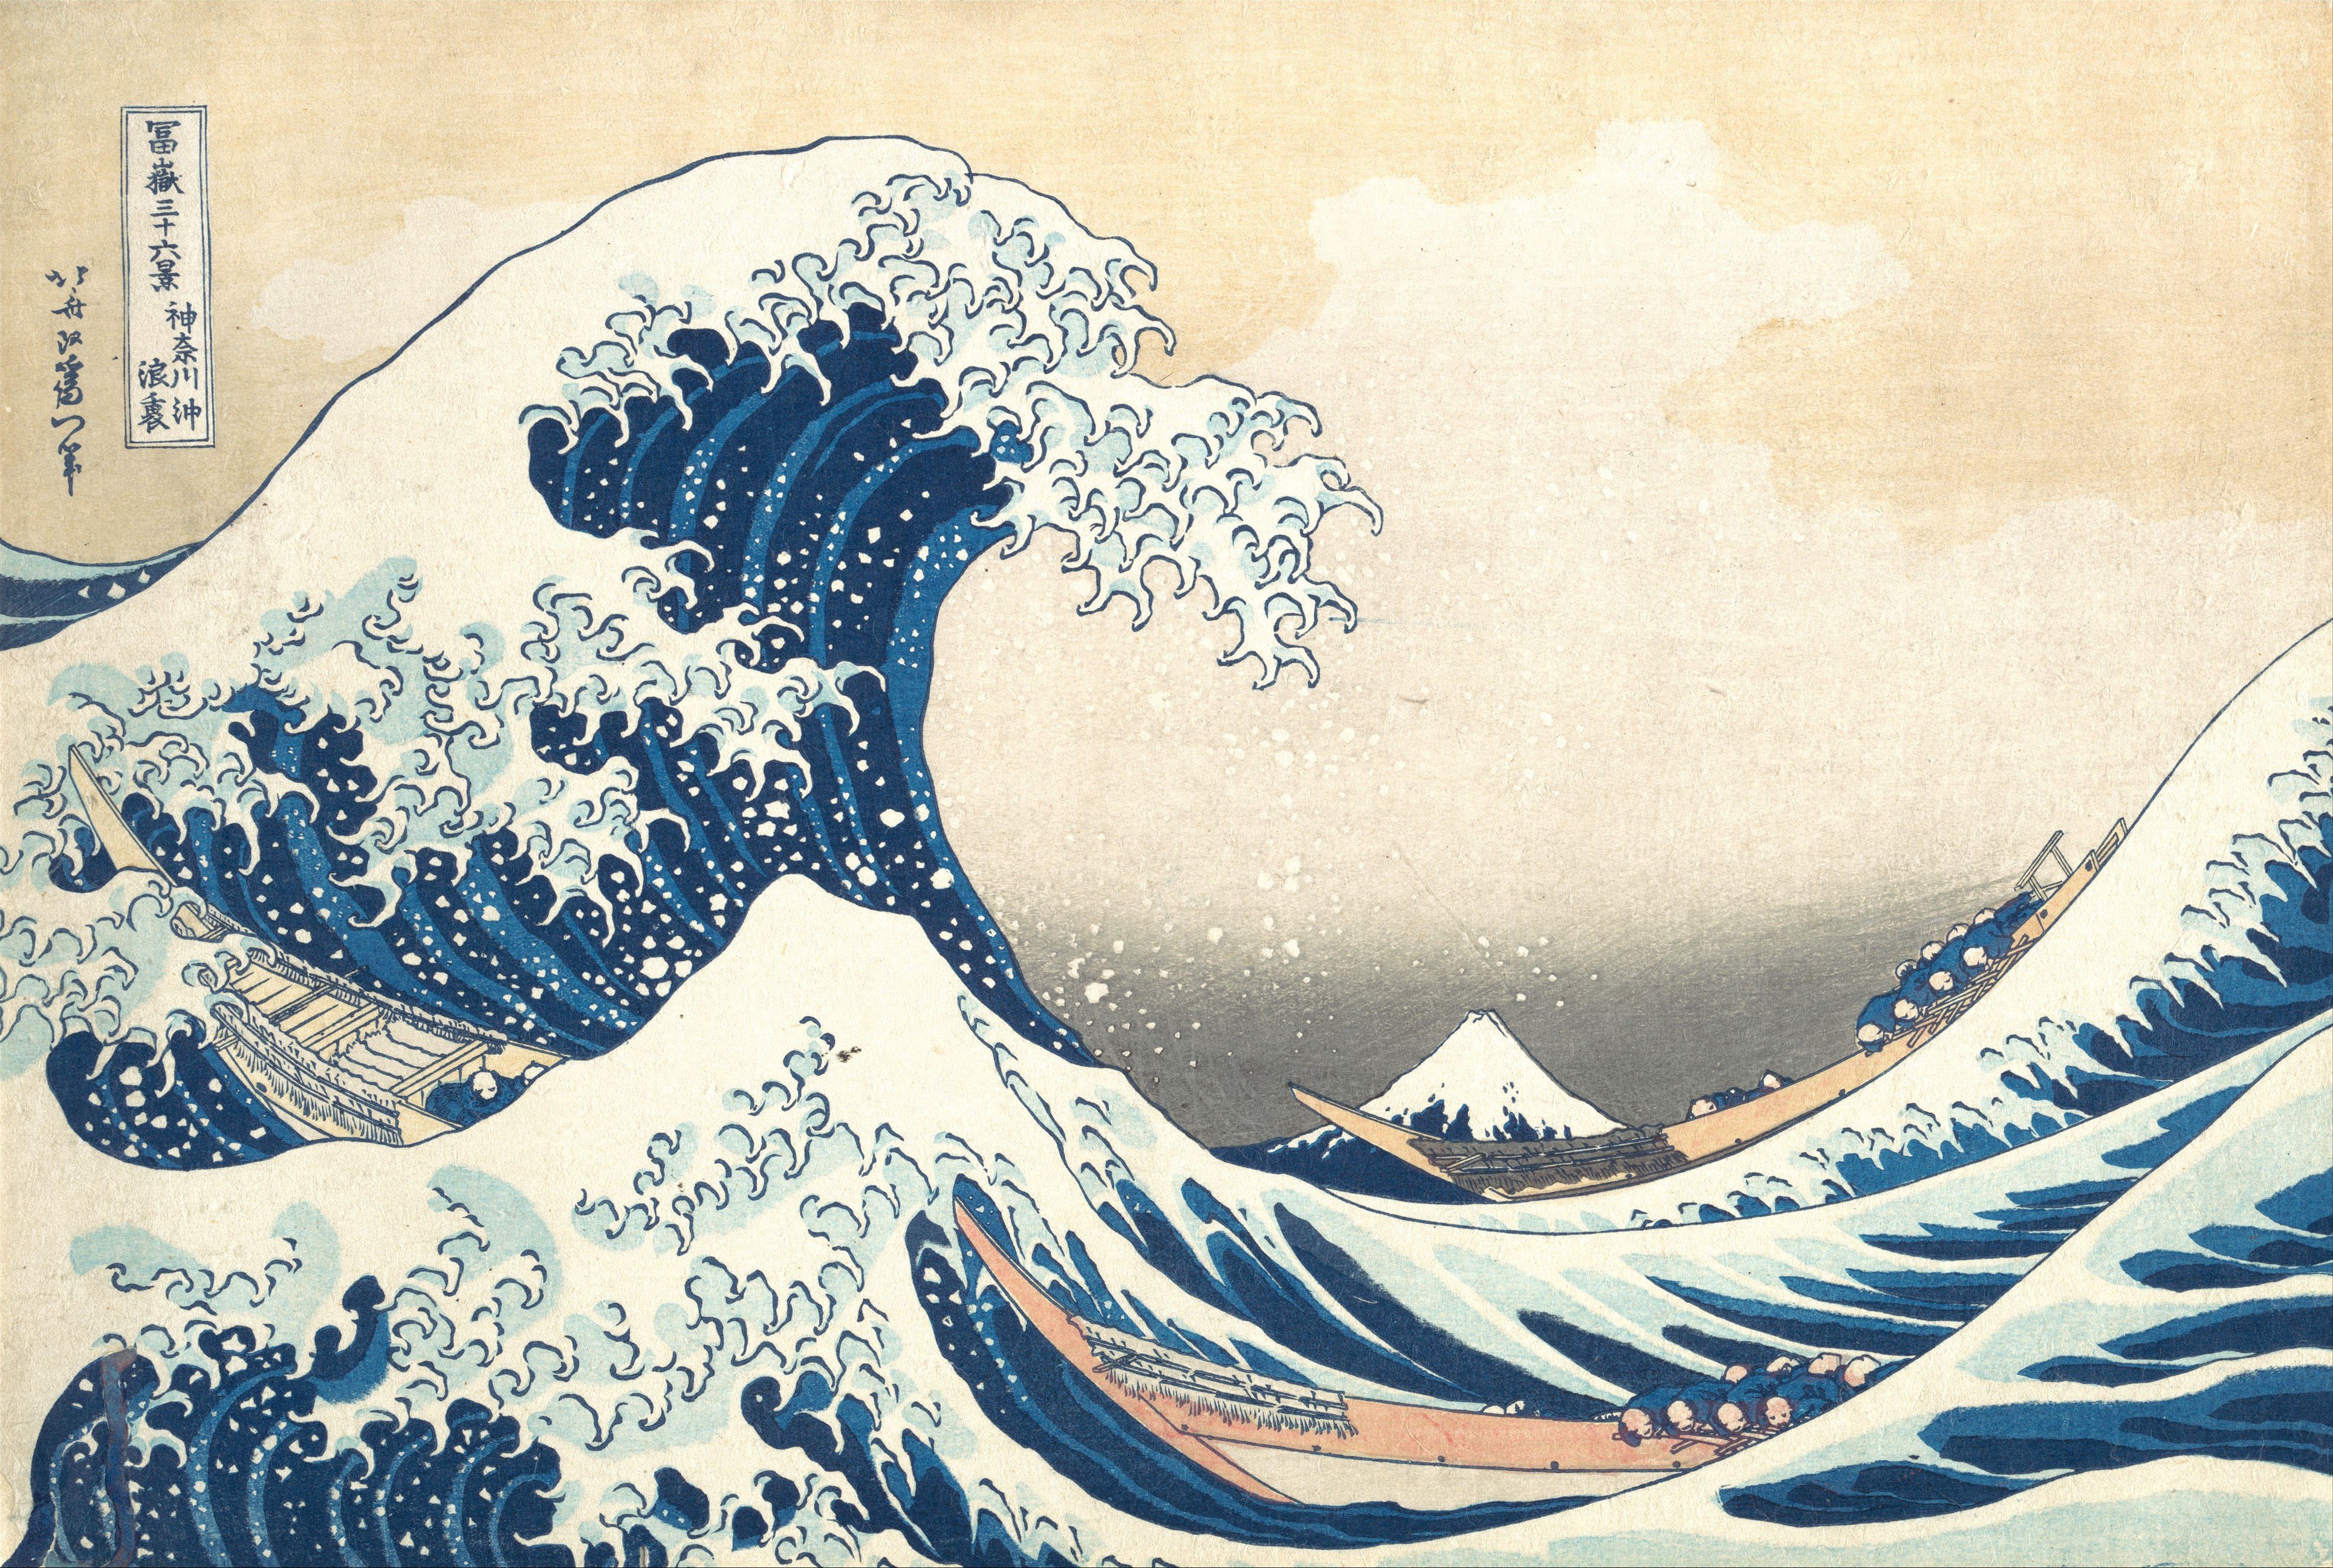 waves, Painting, Japan, Artwork, Sea, Boat, The Great Wave off Kanagawa Wallpaper